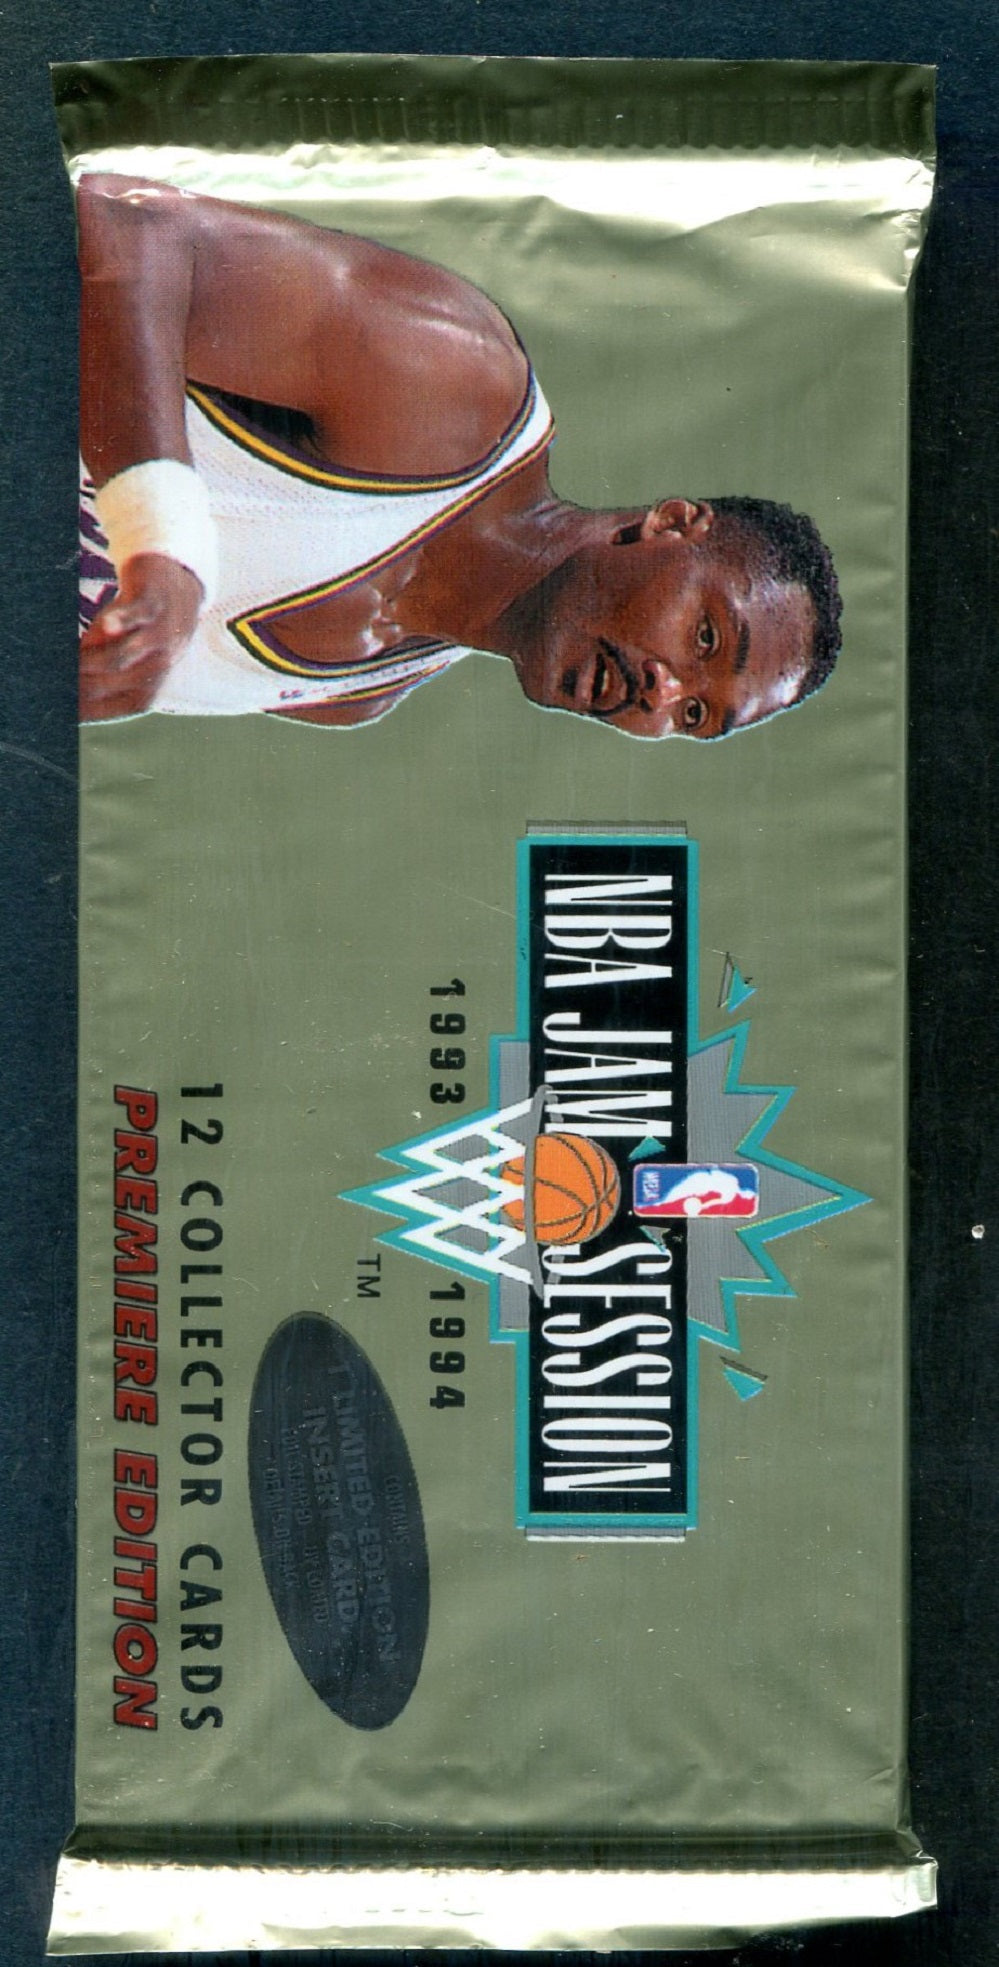 1993/94 Fleer Jam Session Basketball Pack